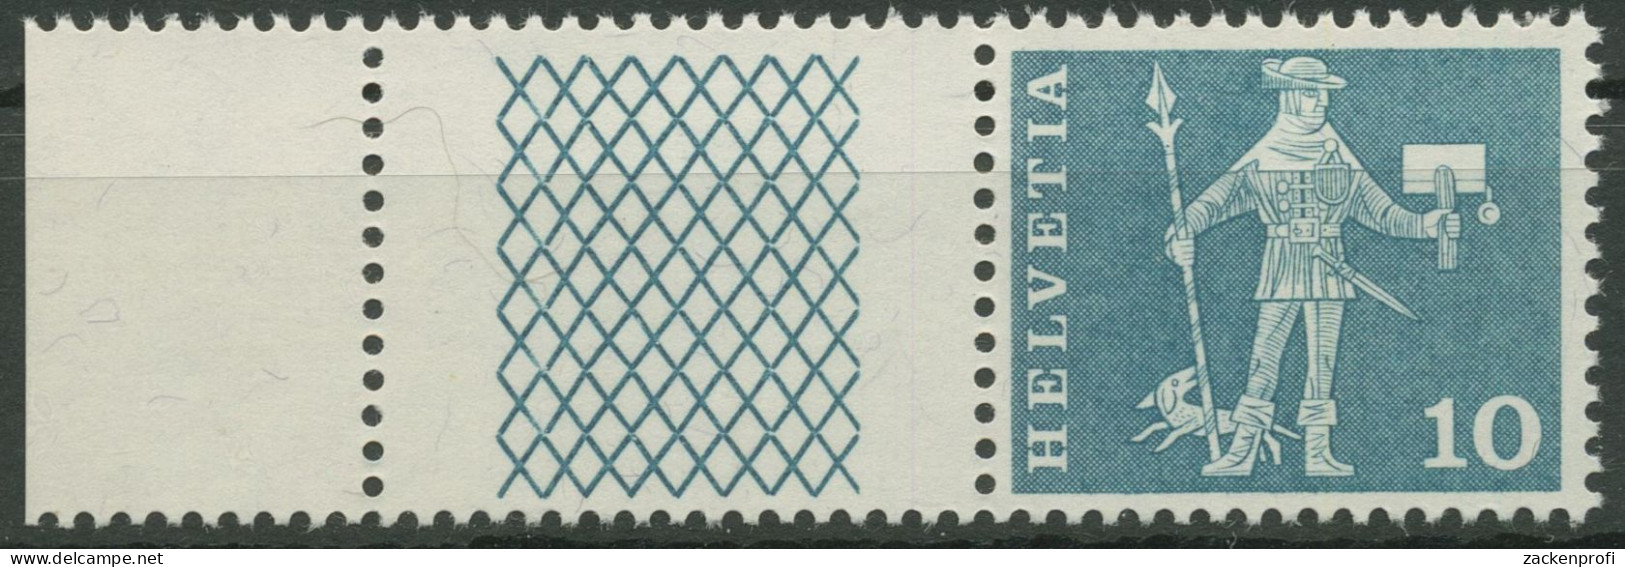 Schweiz 1960 Postmotive Postbote 697 W 26 Postfrisch - Unused Stamps